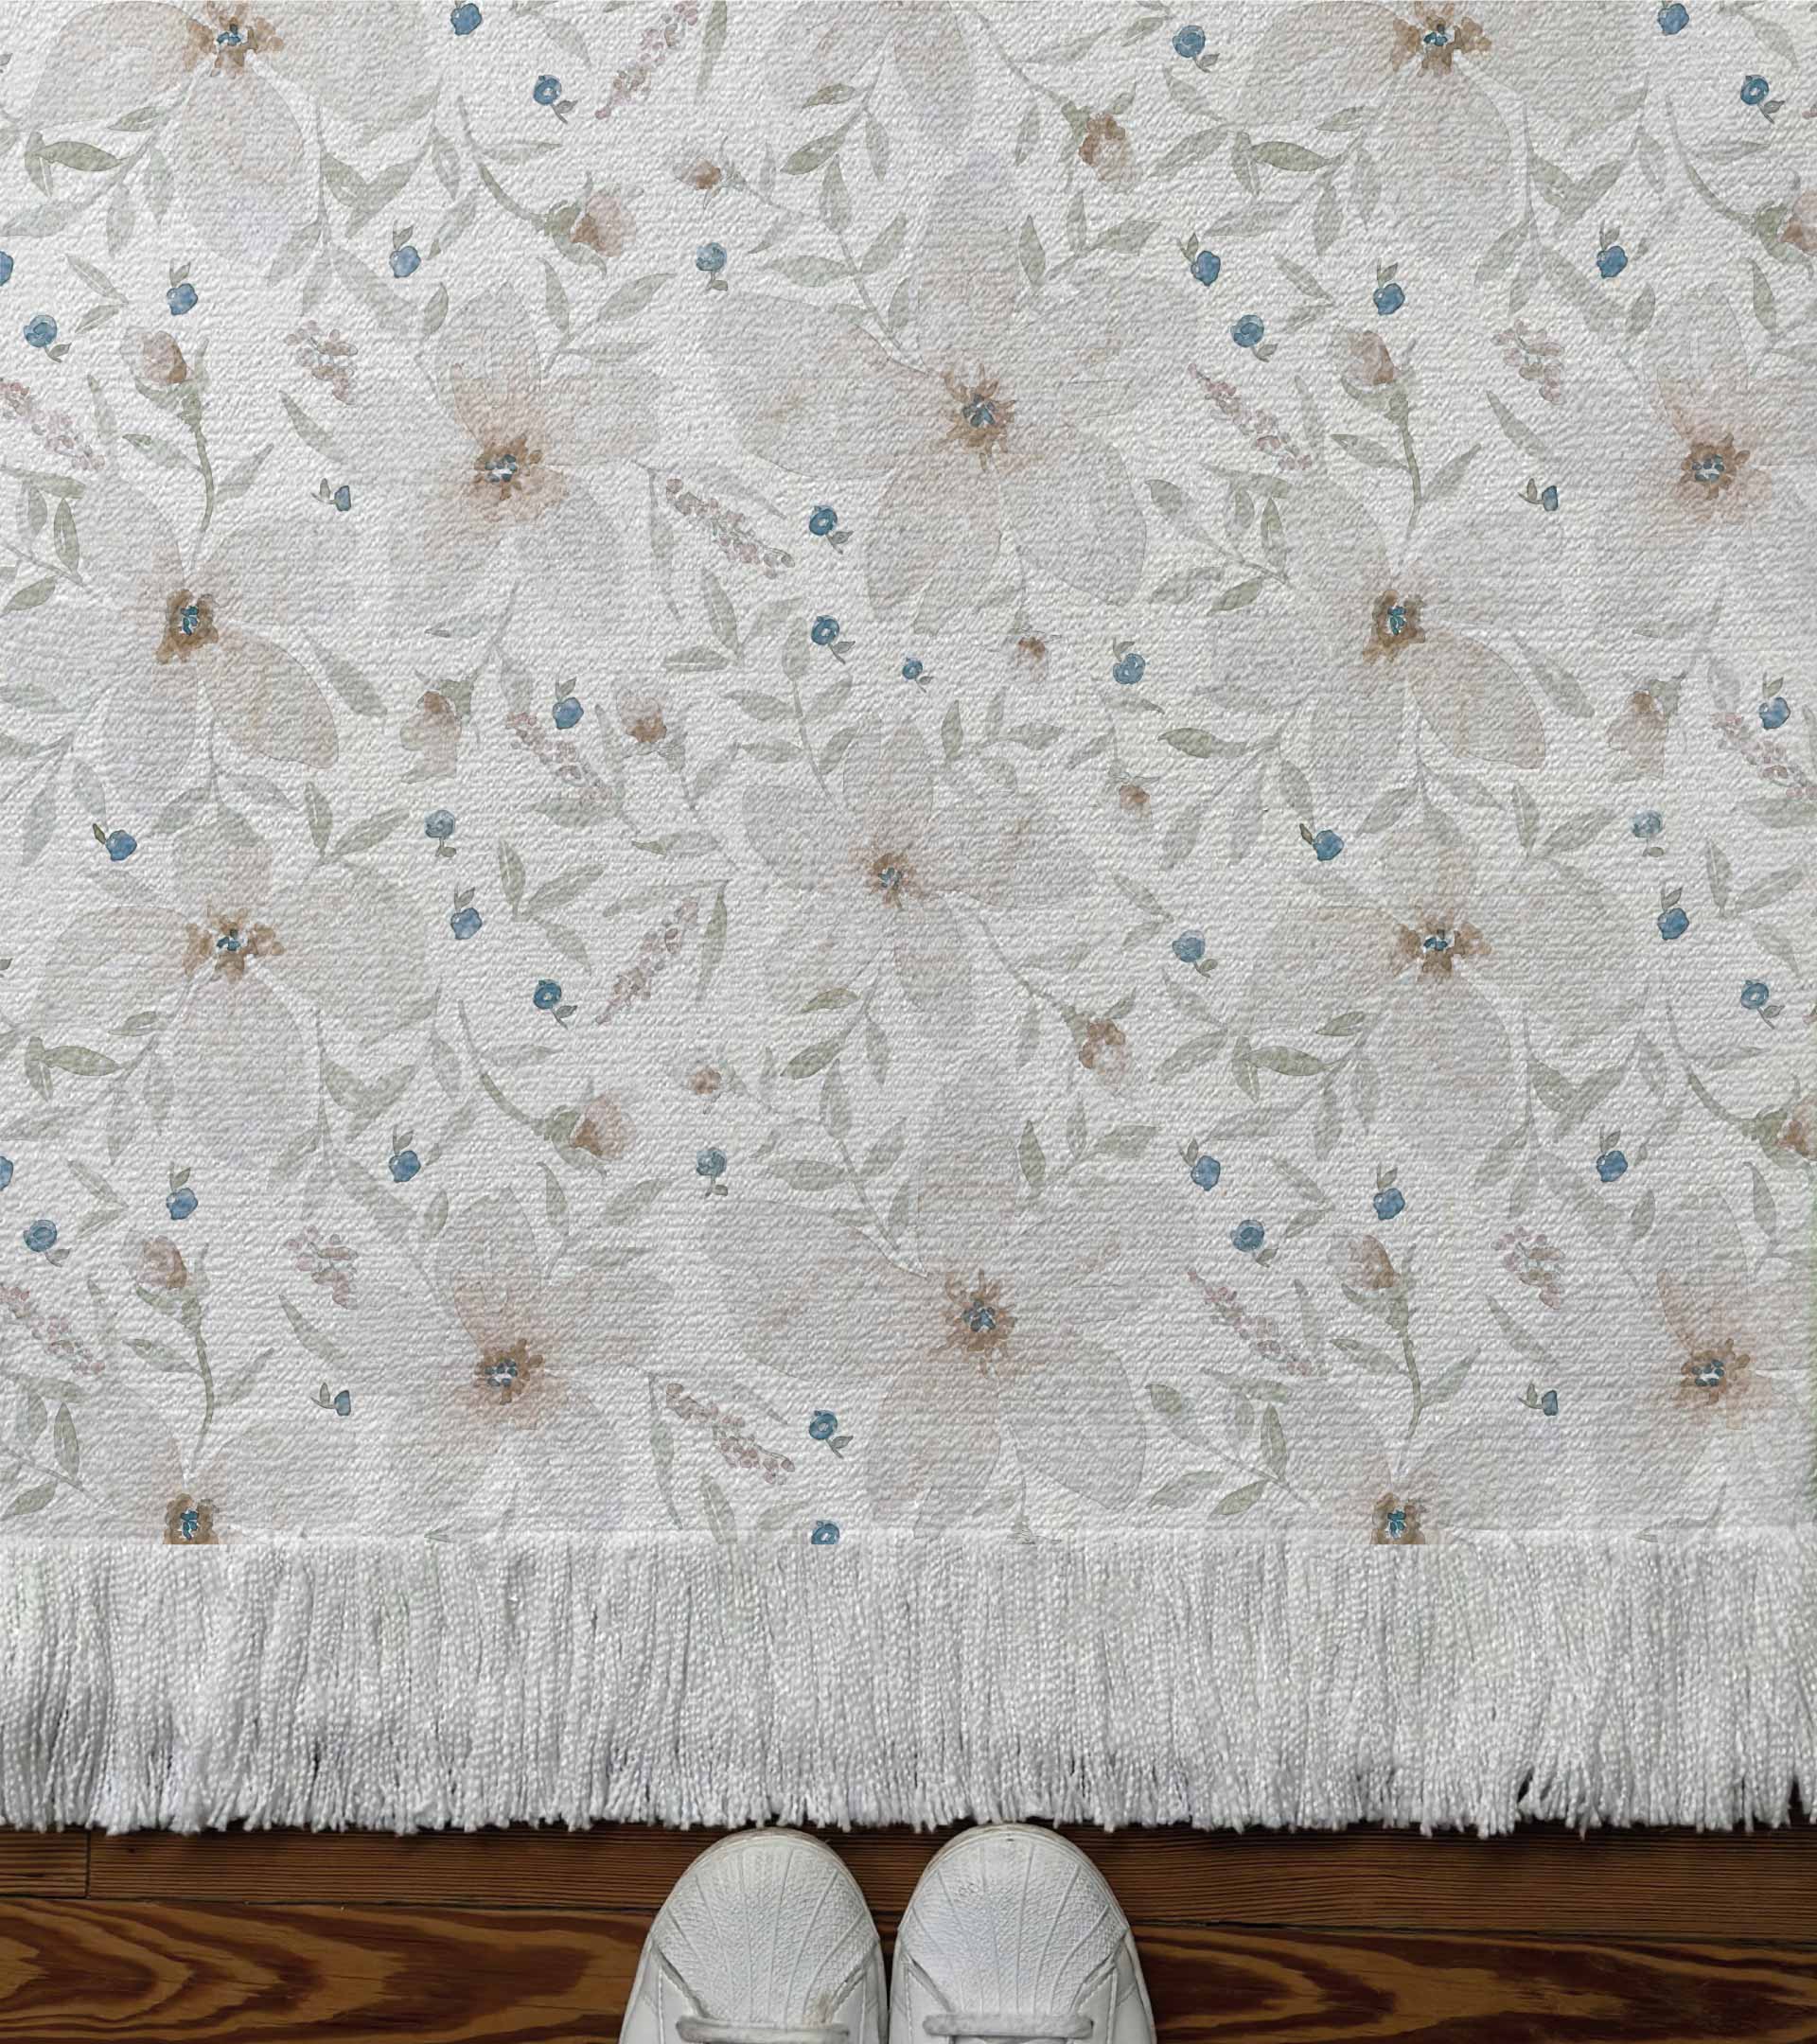 Alfombra tejida diseño floral con flores blancas, hojas verdes y fruto azules. Diseño botanico, naturaleza